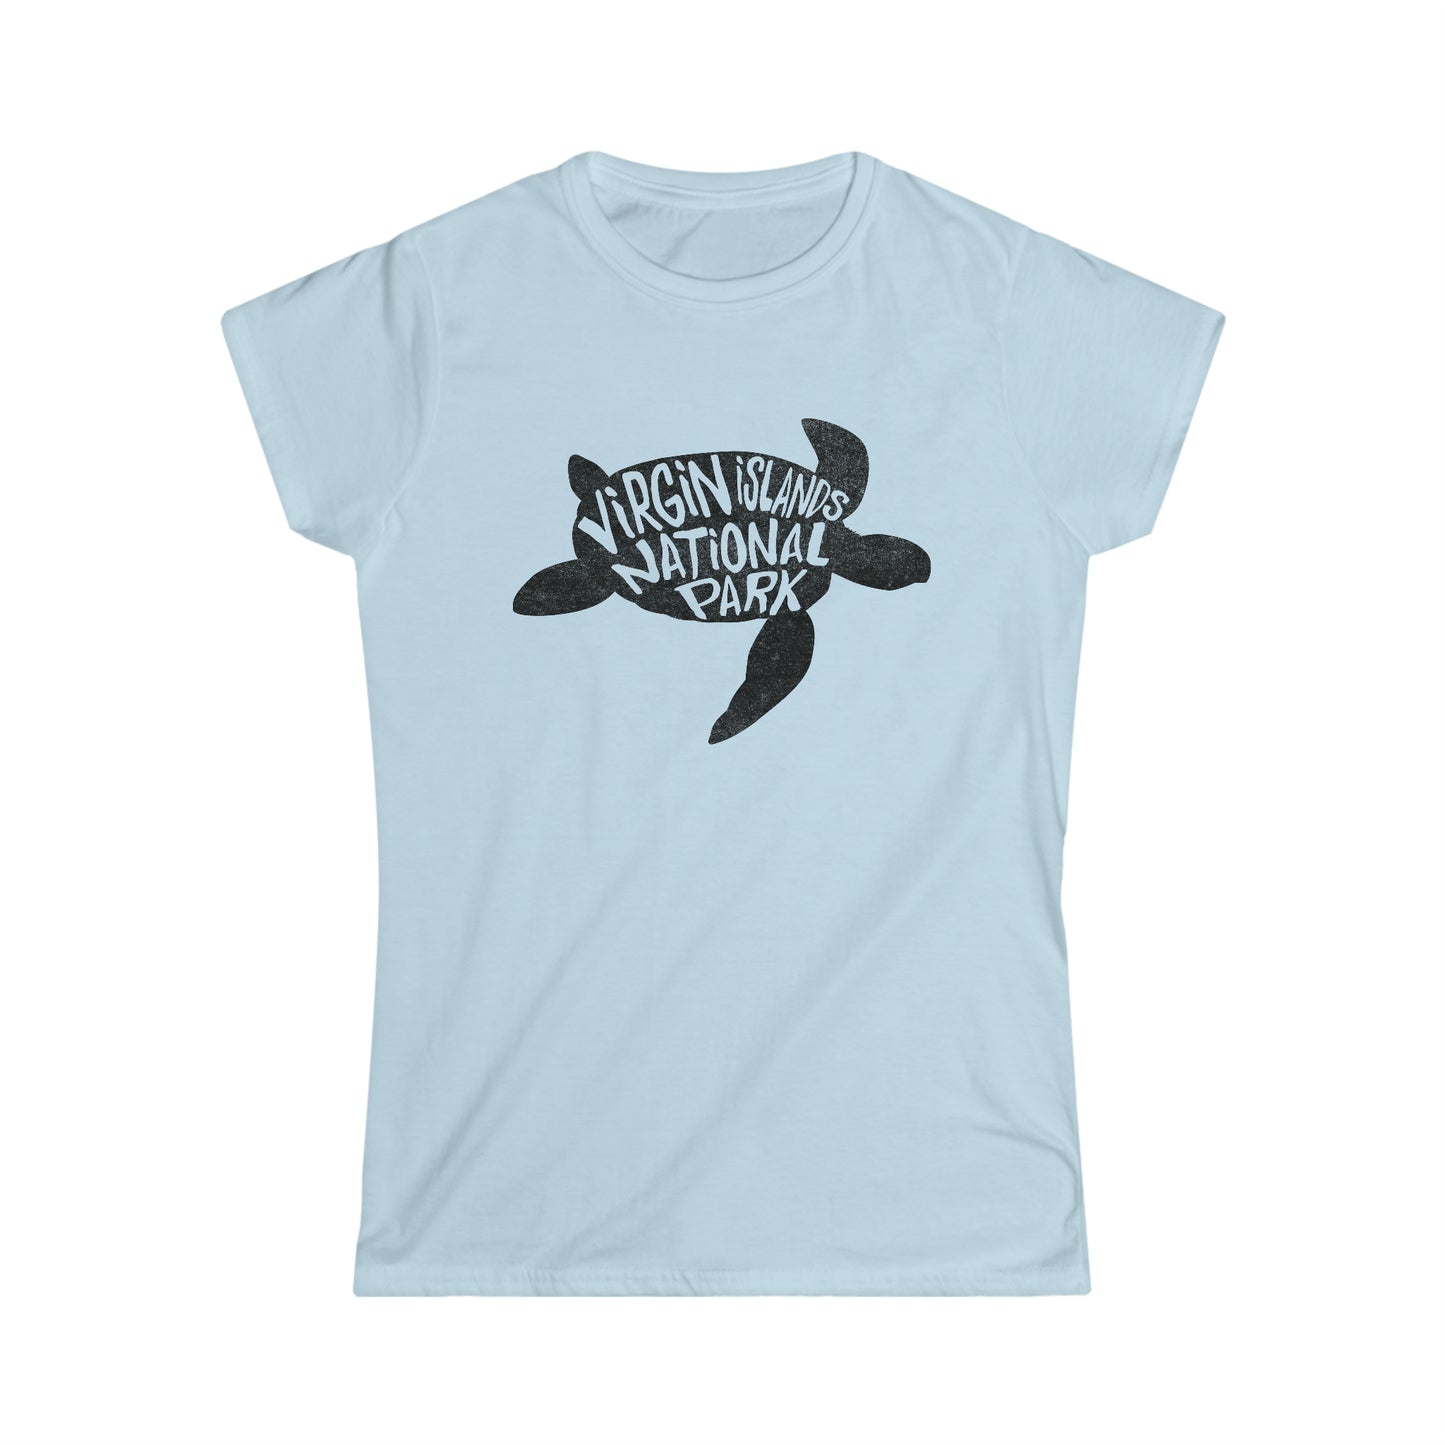 Virgin Islands National Park Women's T-Shirt - Turtle